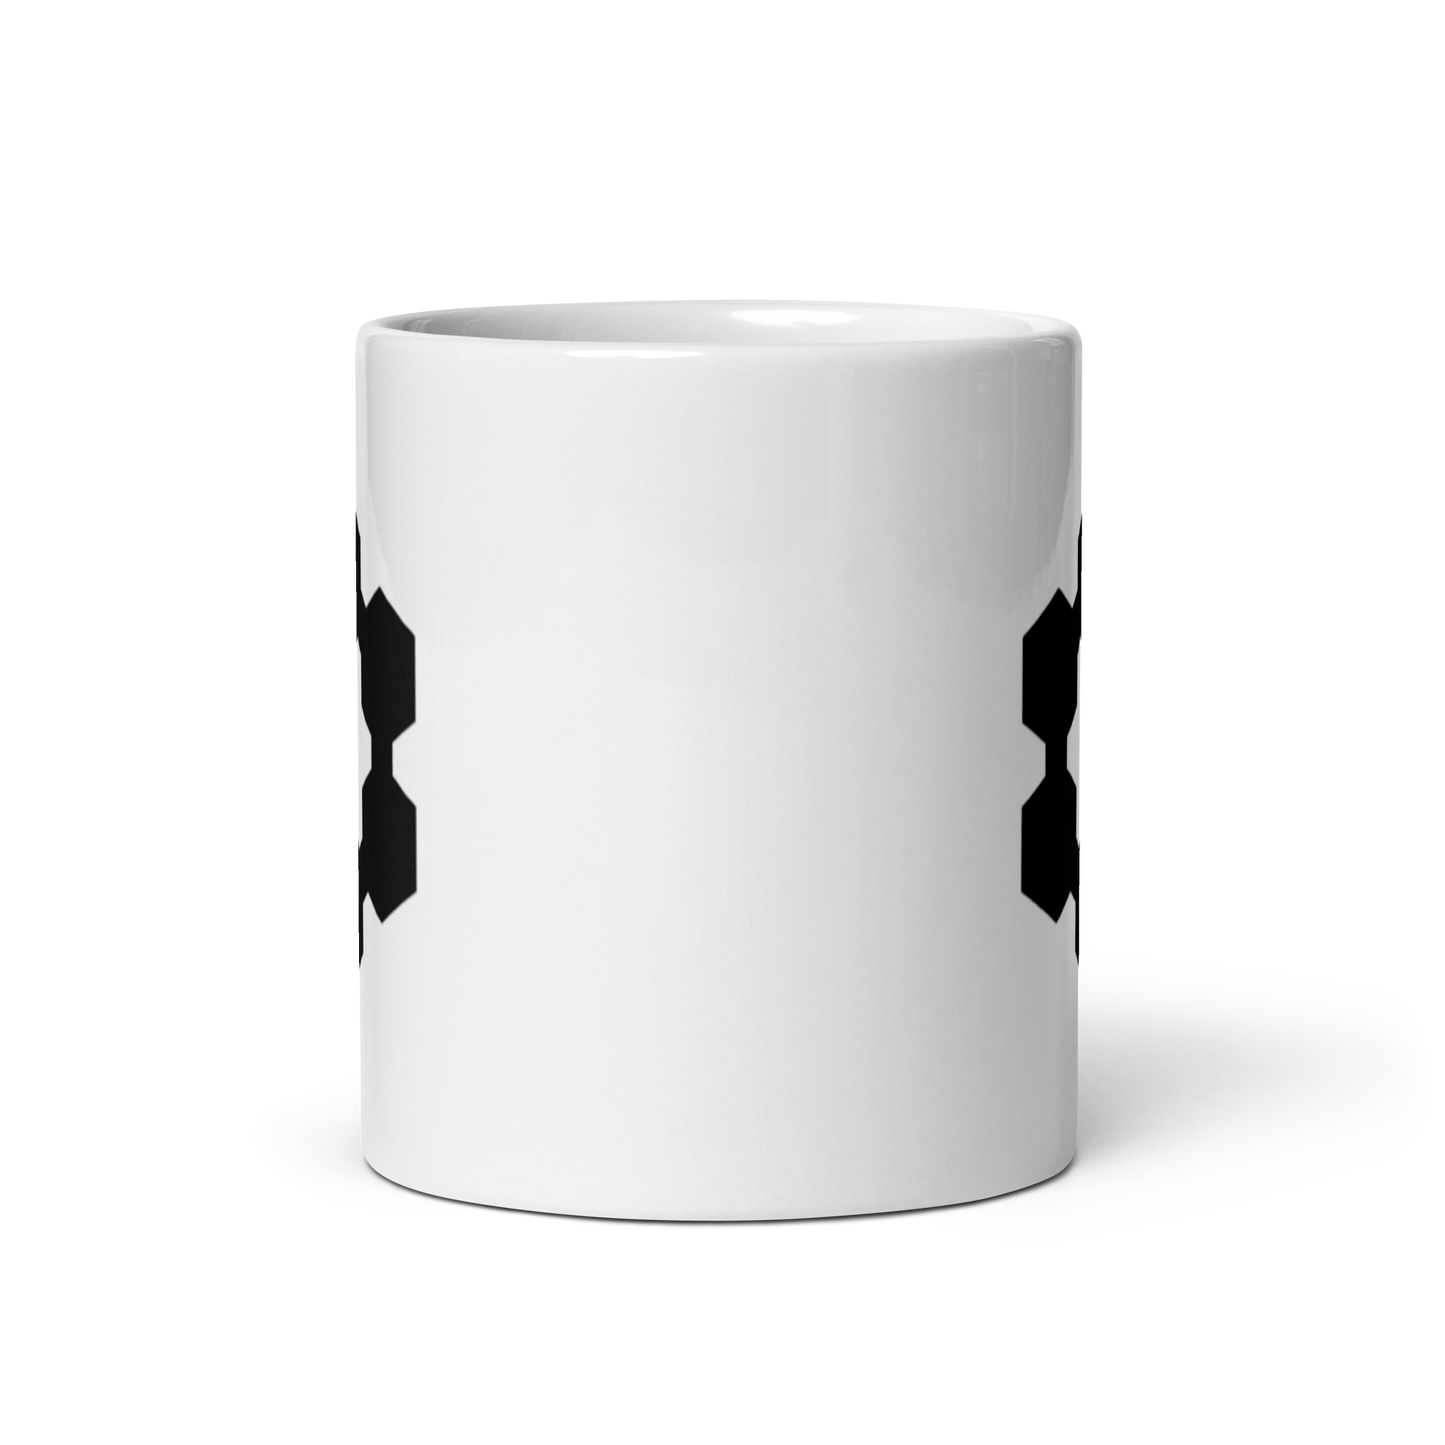 Carbon 6 Mug